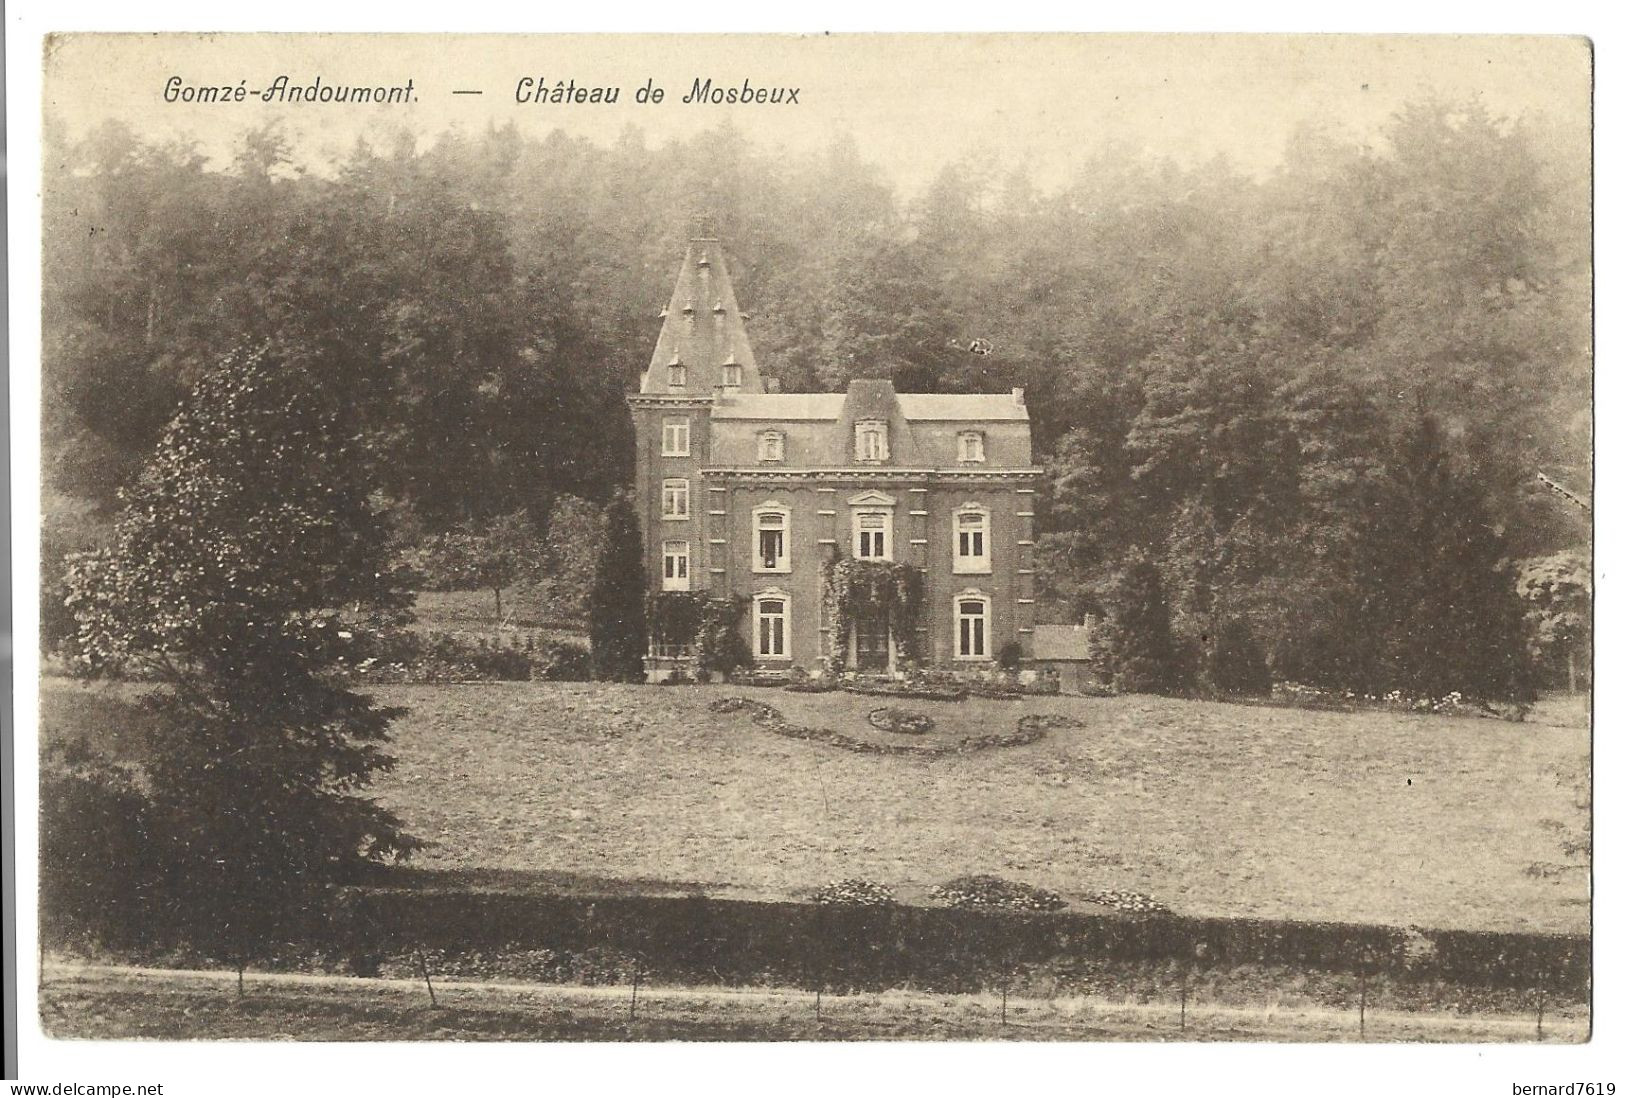 Belgique  -  Gomze  Andoumont  -  Chateau De Mosbeux - Chevalier  Yvan  De  Shirlet  Gernaert - Trooz